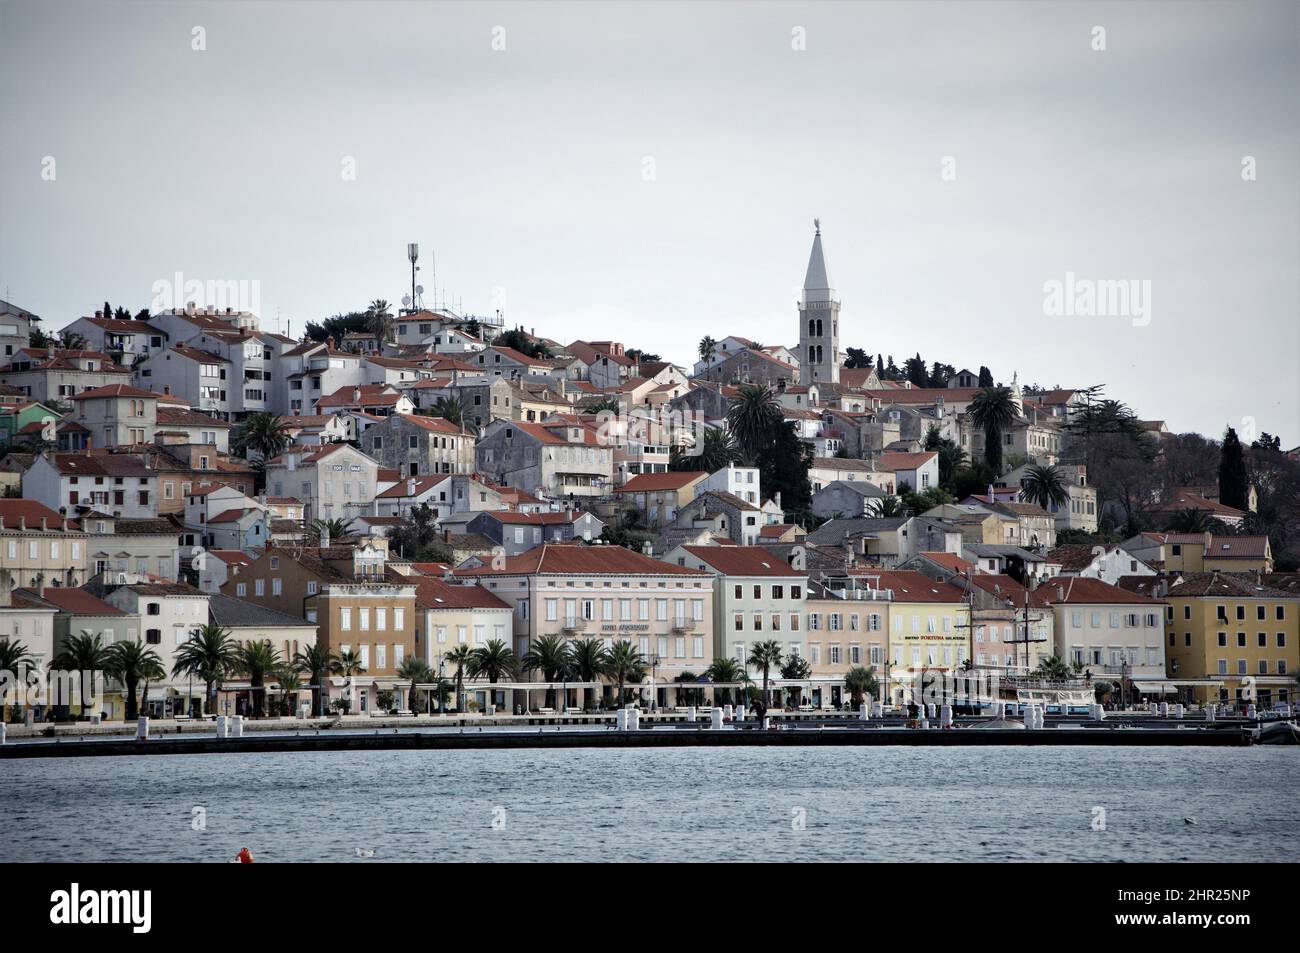 Vue panoramique sur le port de Mali Losinj et la ville côtière en Croatie sur la mer Adriatique. Mali Losinj port, sur l'île de Losinj. Banque D'Images